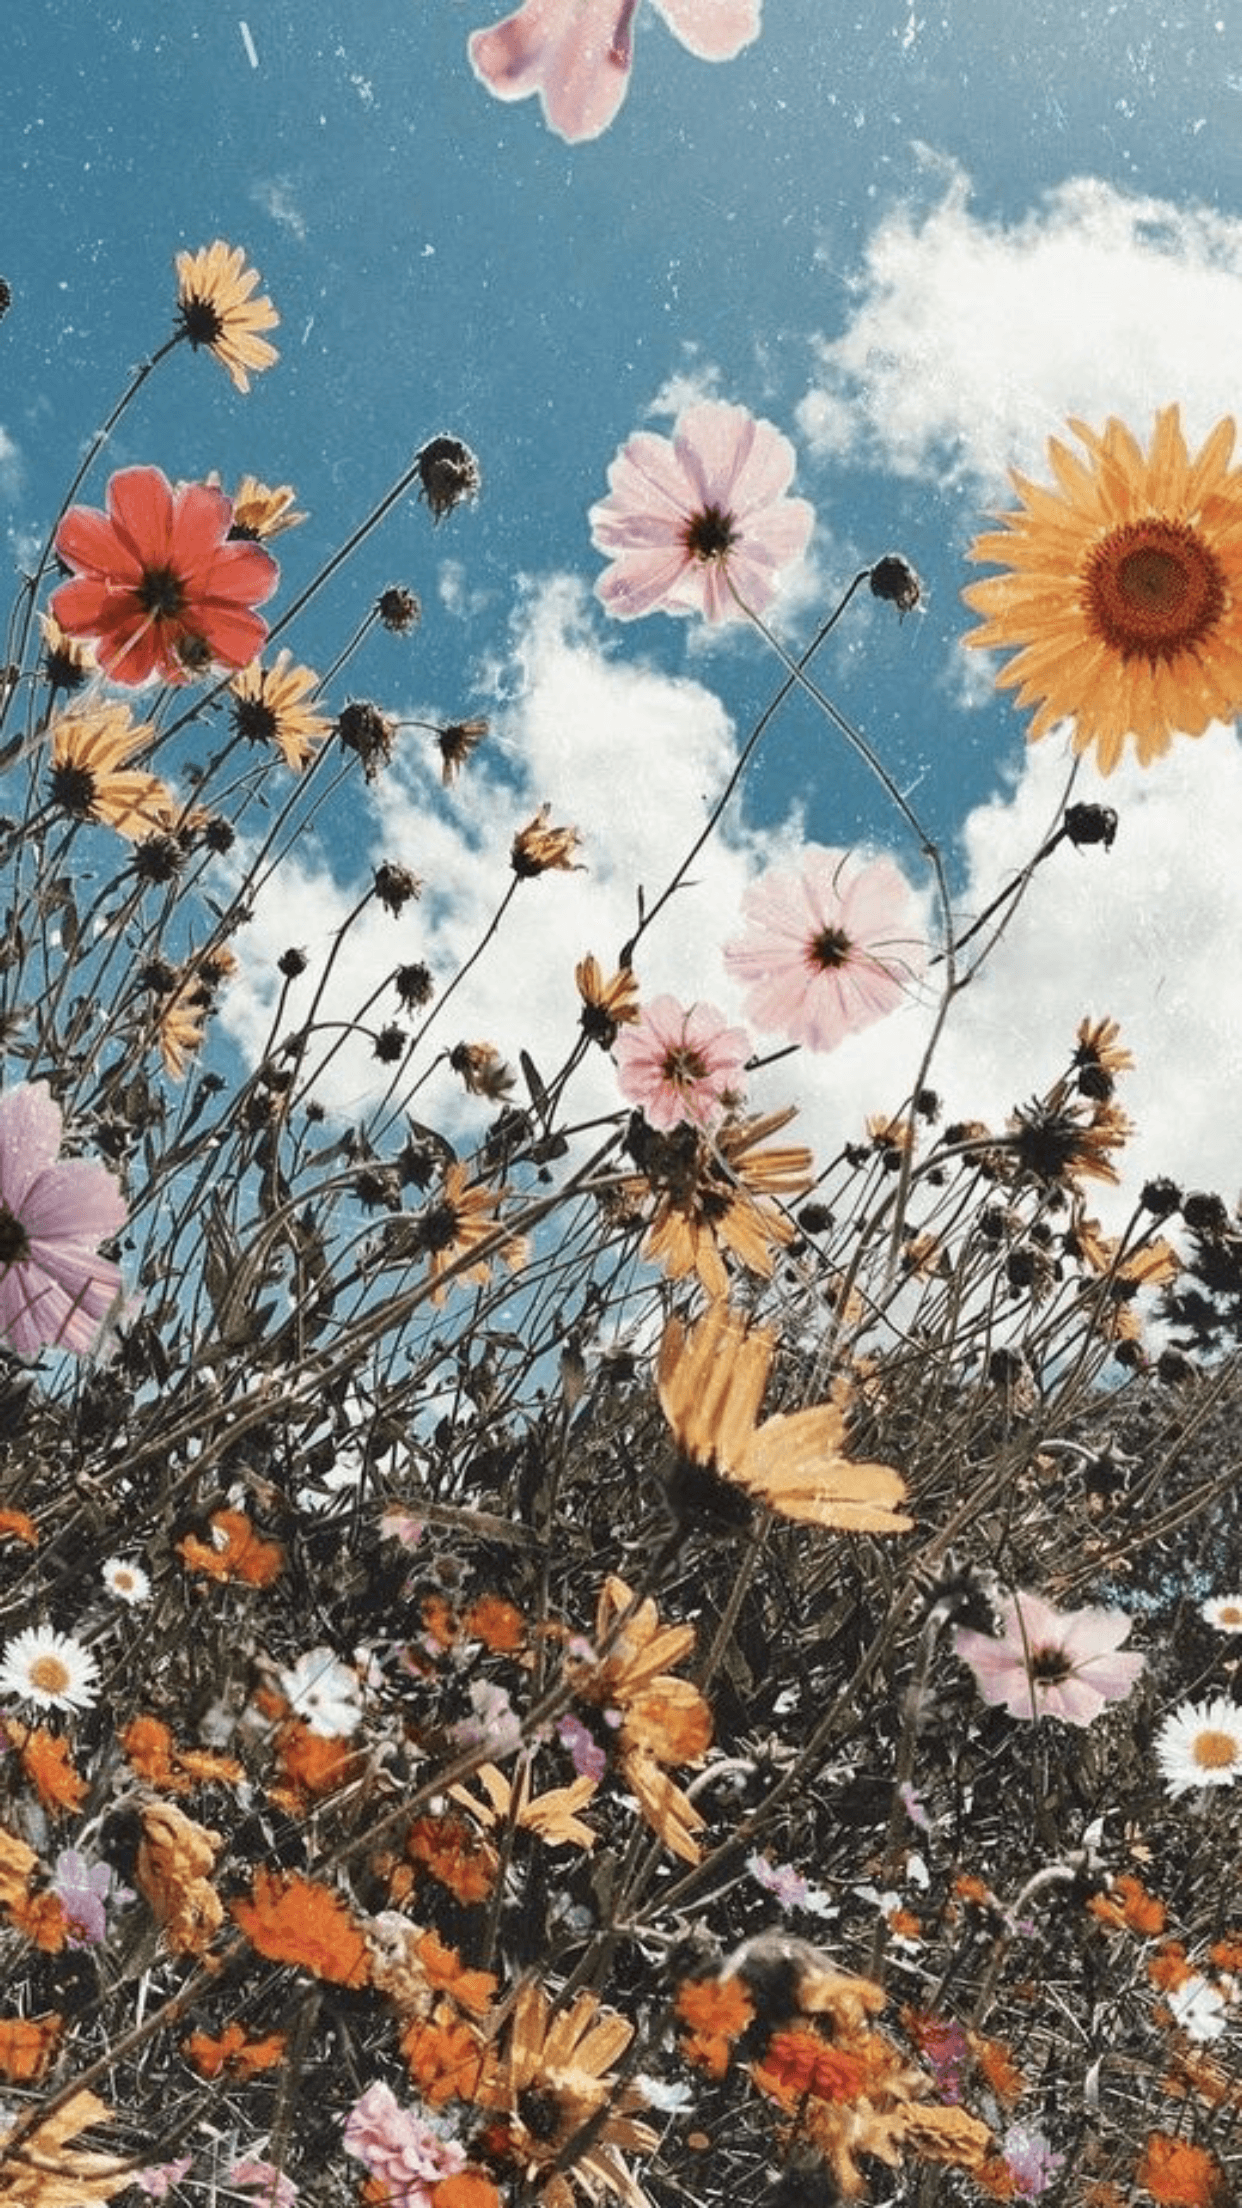 Aesthetic Garden Wallpapers - Top Free Aesthetic Garden Backgrounds ...